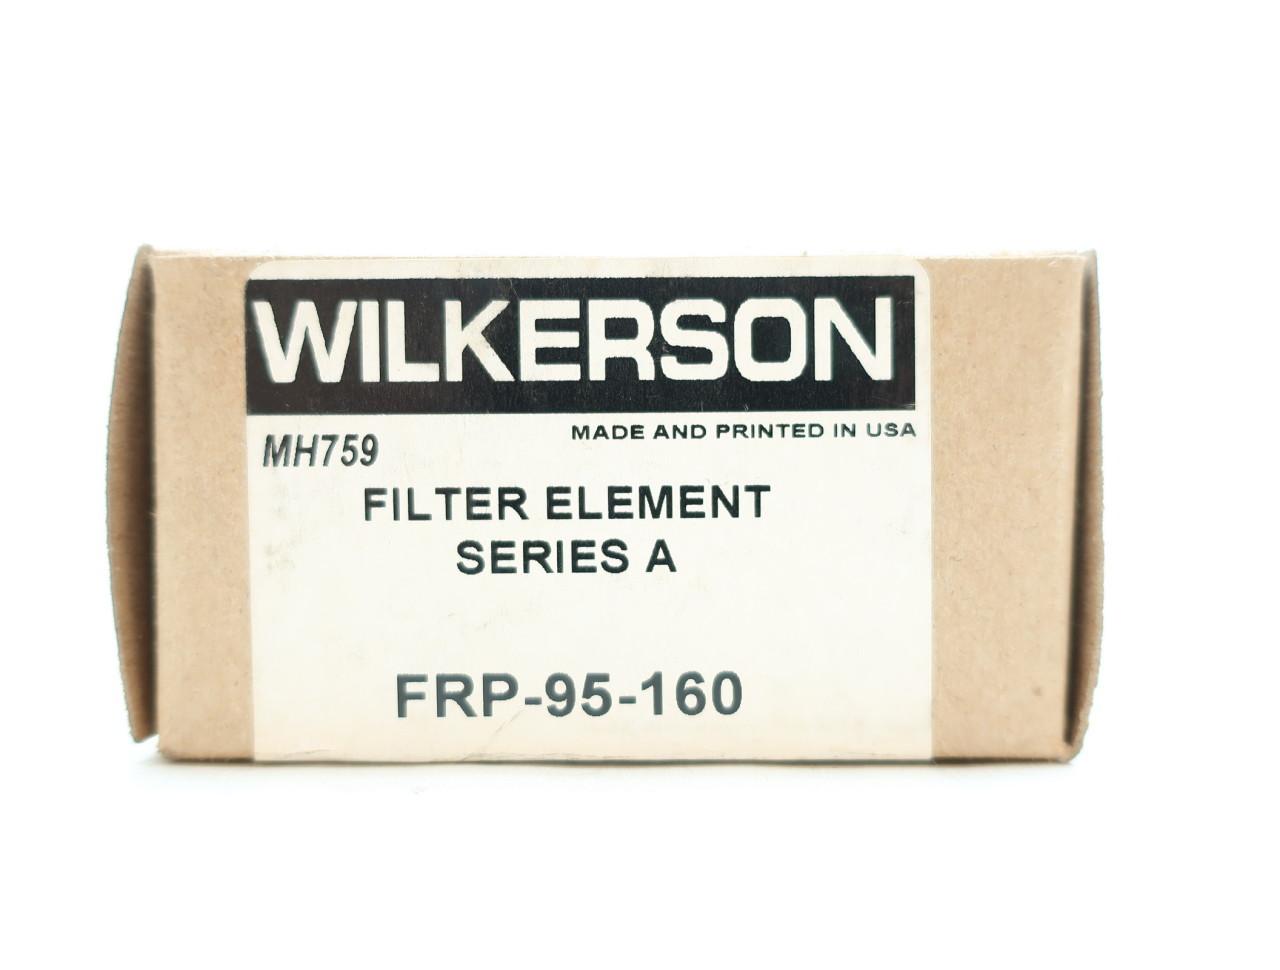 FRP-95-160 SERIES A NIB FILTER ELEMENT WILKERSON 